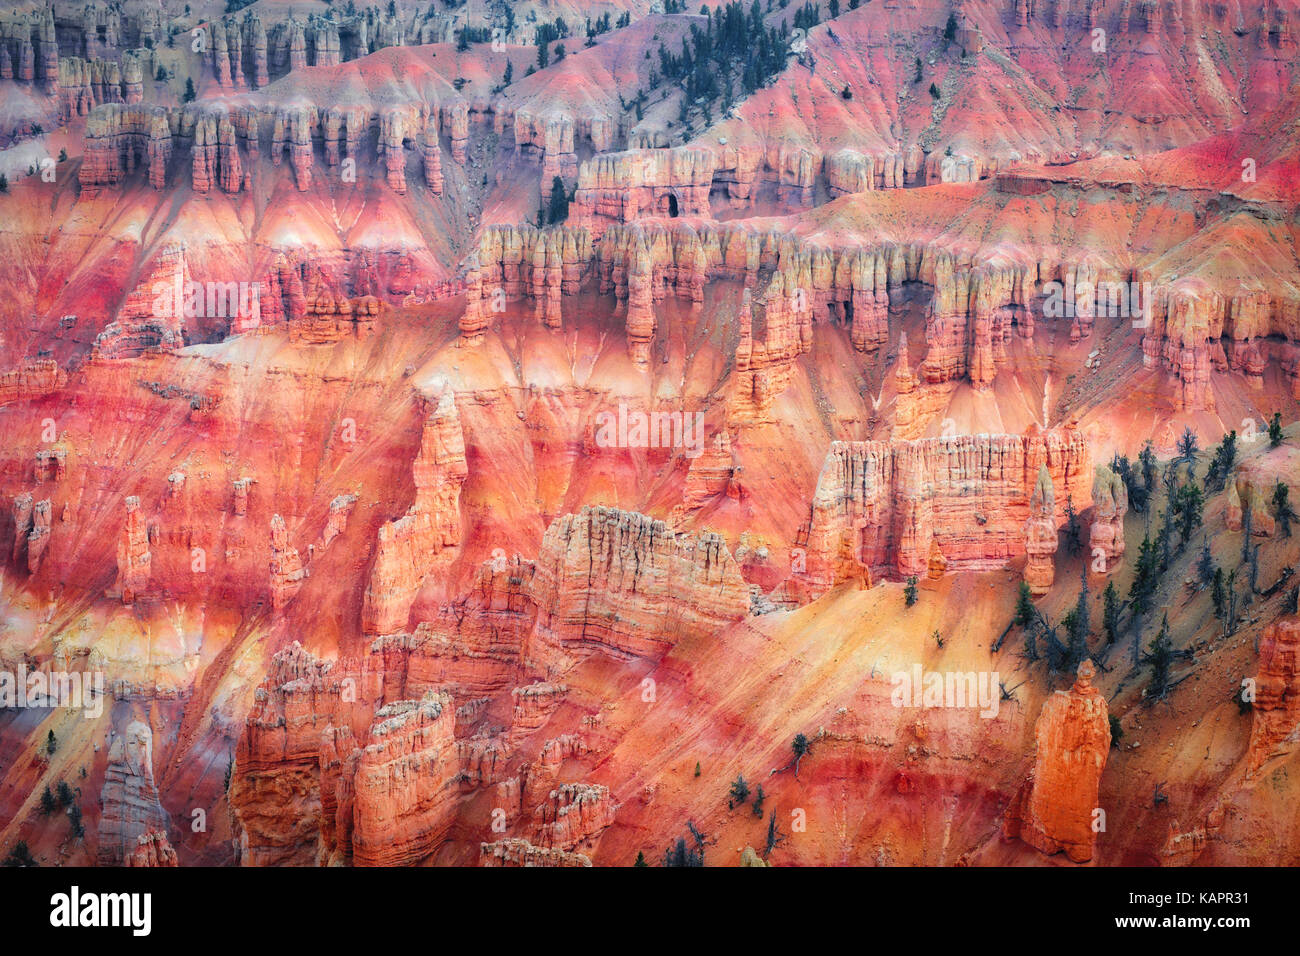 Ferro e ossidi di magnesio creare queste splendide rosso e viola i colori tra le hoodoo anfiteatro in Utah's Cedar Breaks National Monument. Foto Stock